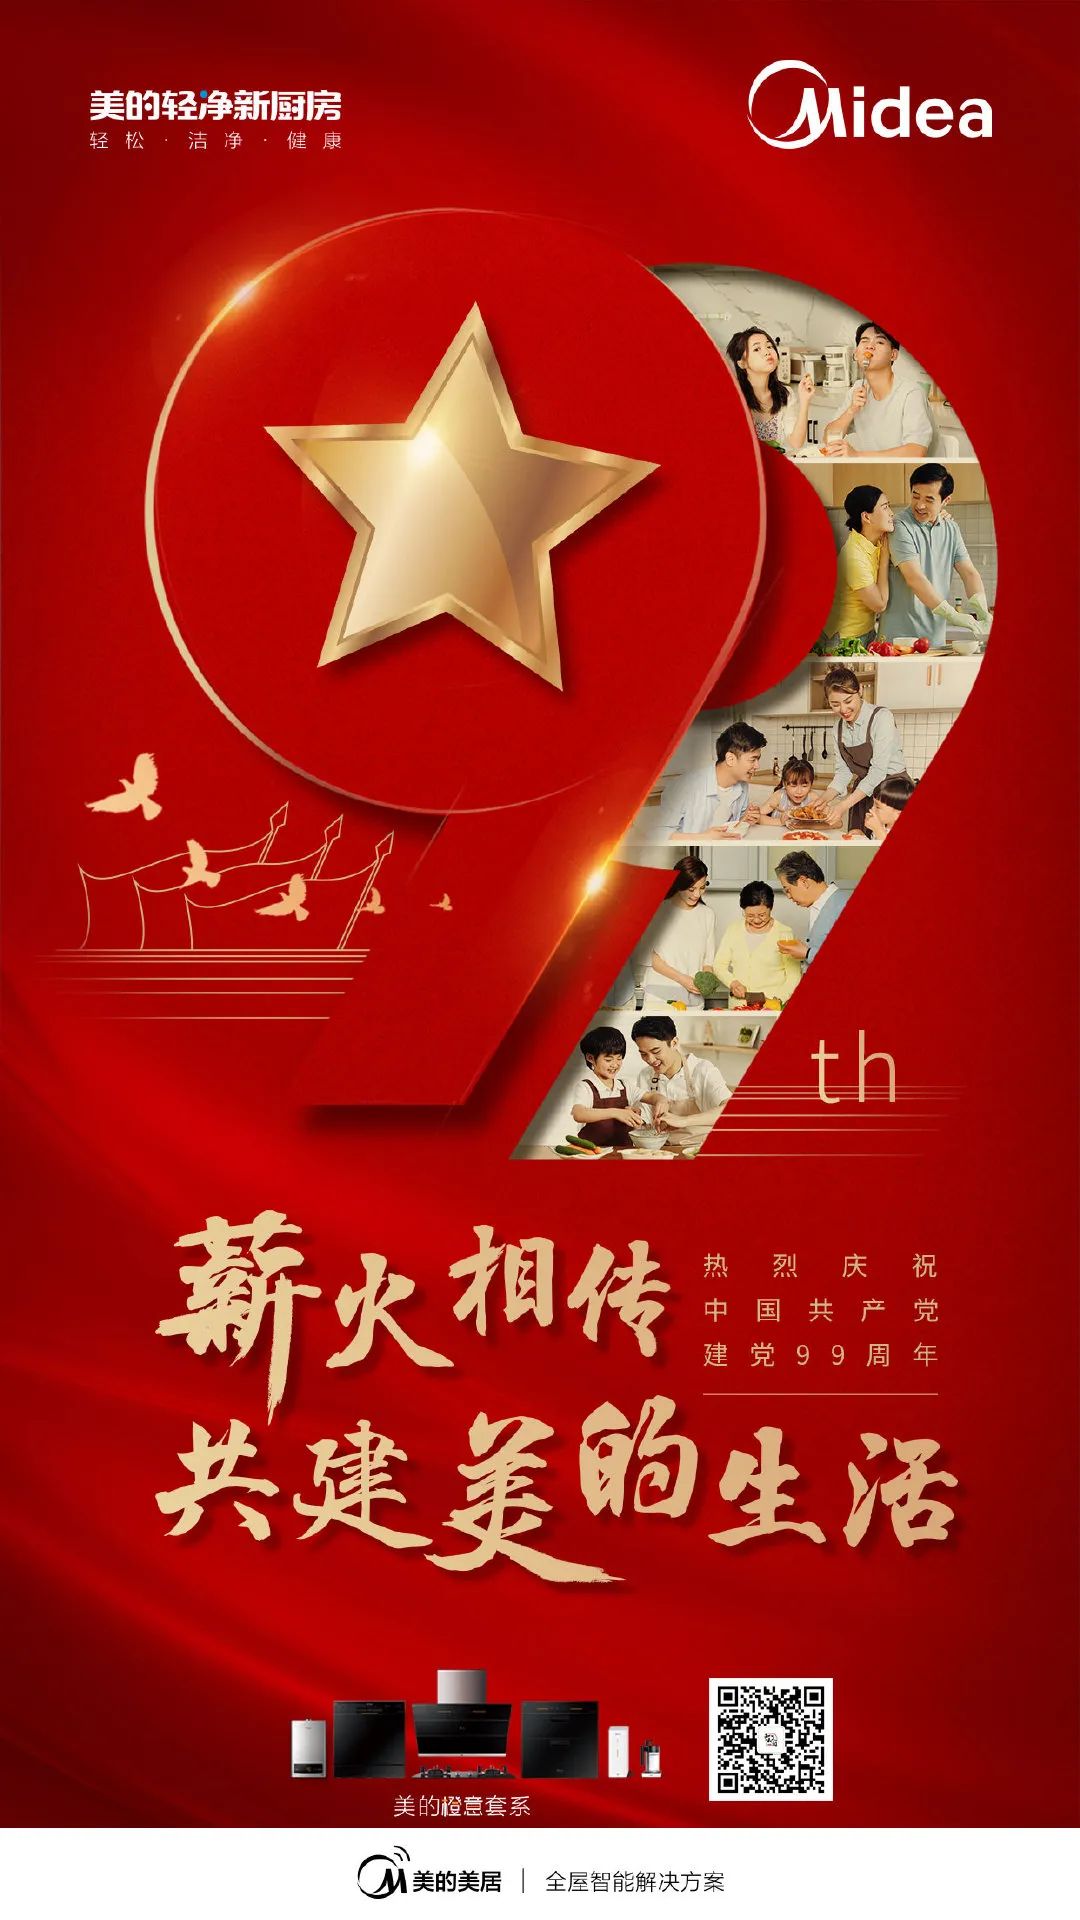 今天所有品牌的海报文案名，都叫中国！